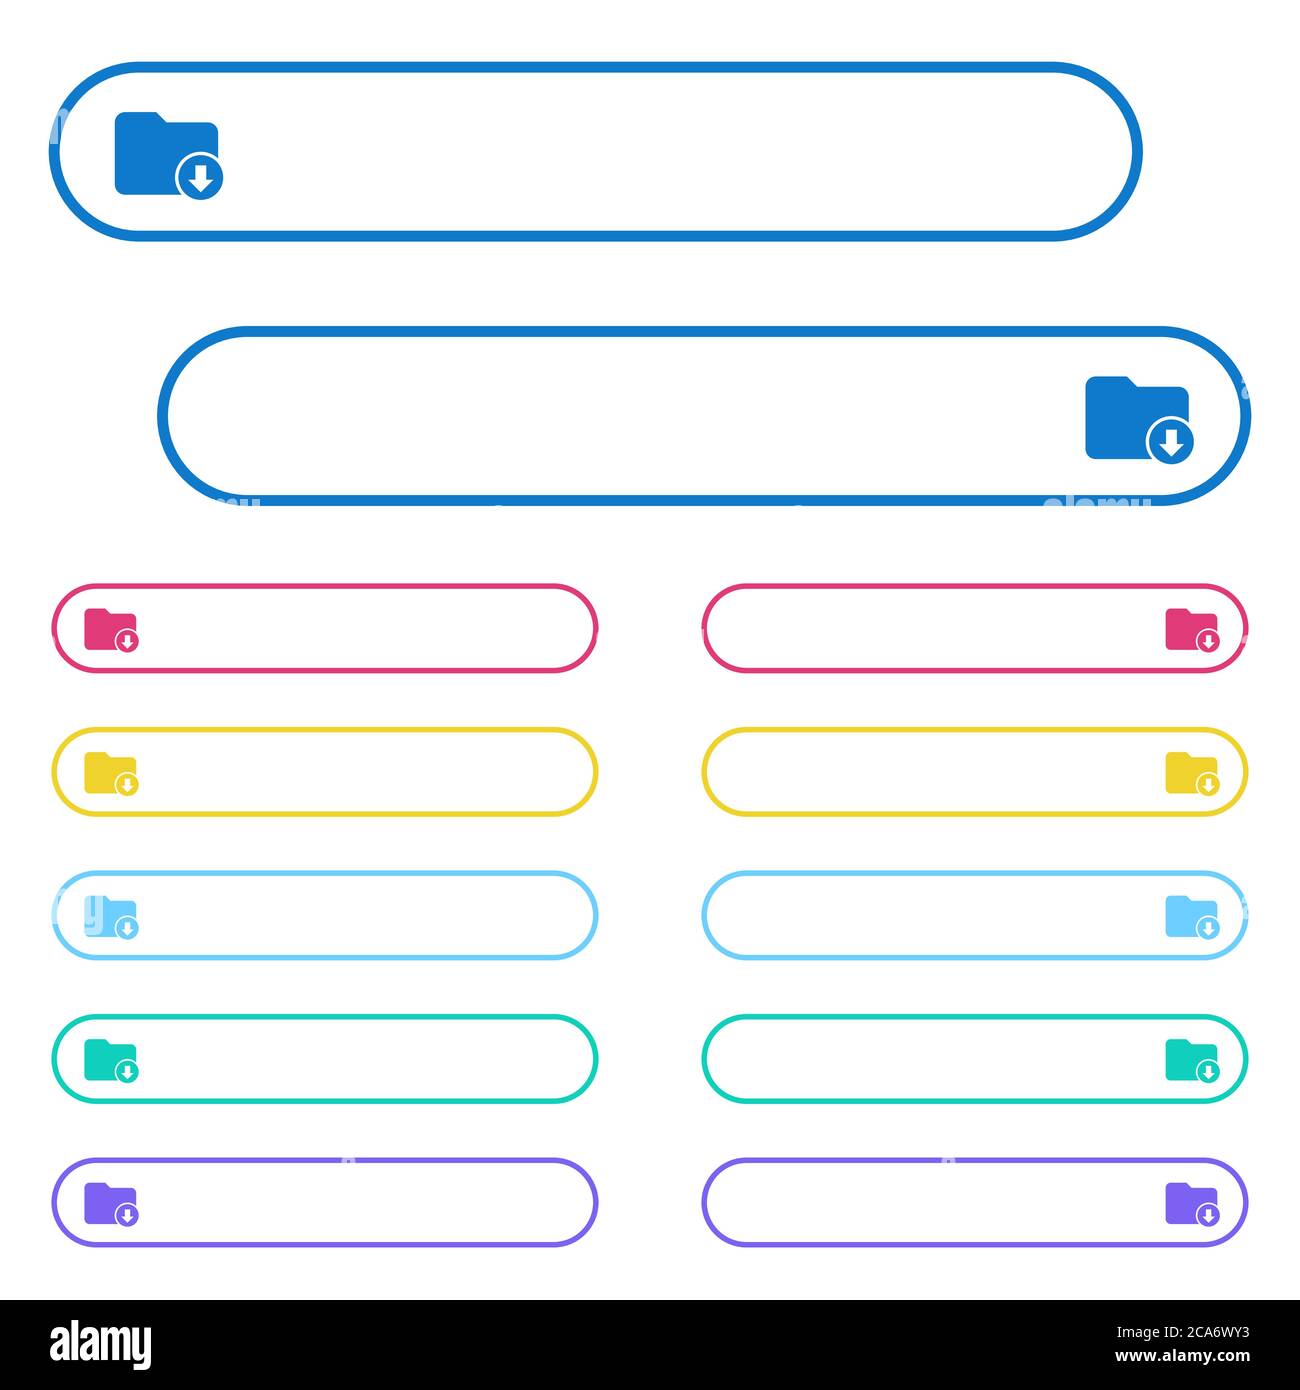 Sposta le icone della directory in basso nei pulsanti di menu a colori arrotondati. Variazioni delle icone sul lato sinistro e destro. Illustrazione Vettoriale